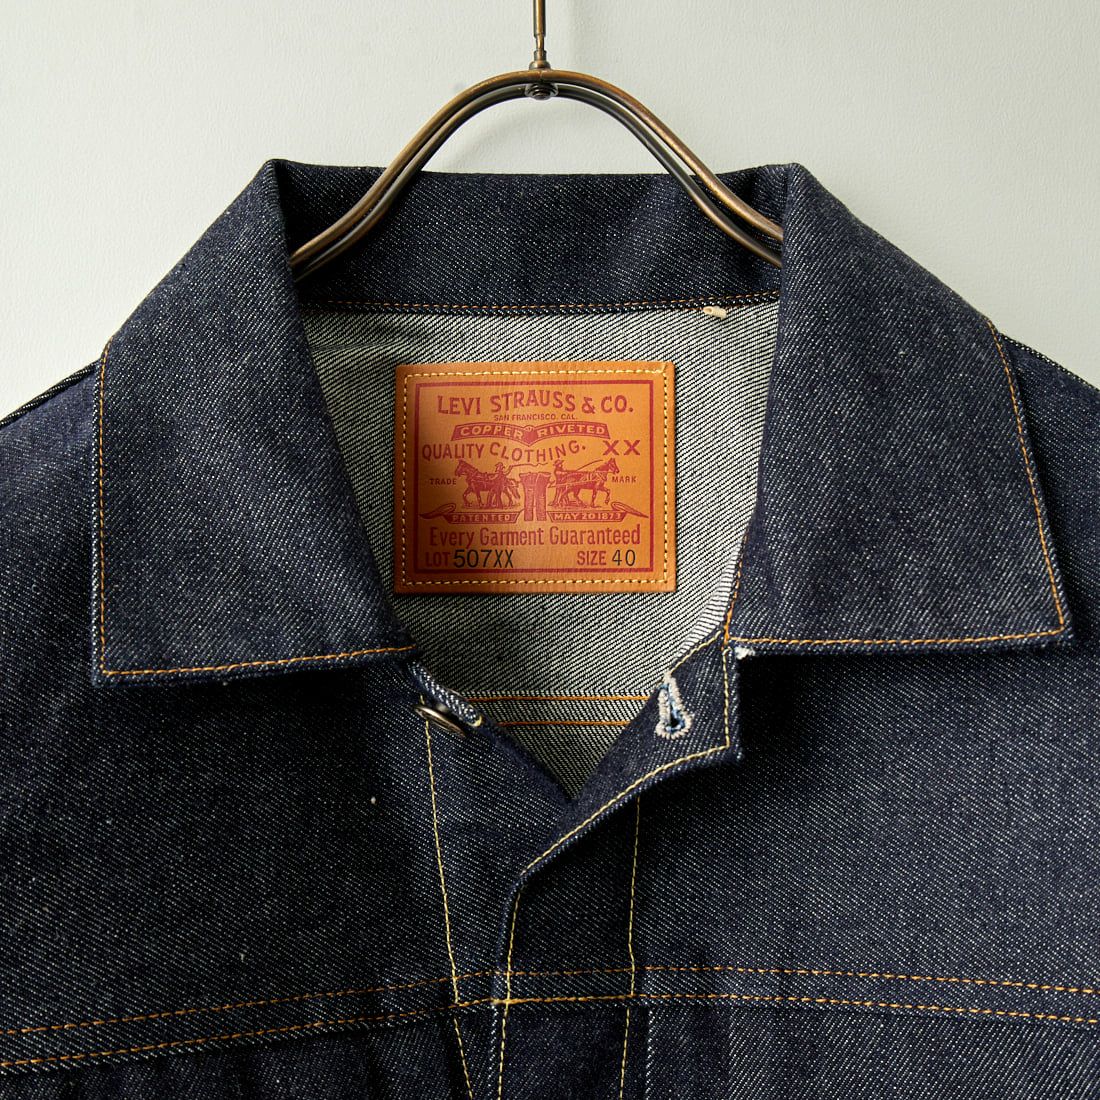 LEVIS Vintage Clothing [リーバイス ヴィンテージ クロージング] 1953モデルTYPE2デニムジャケット [70507-00] 66 RIGID